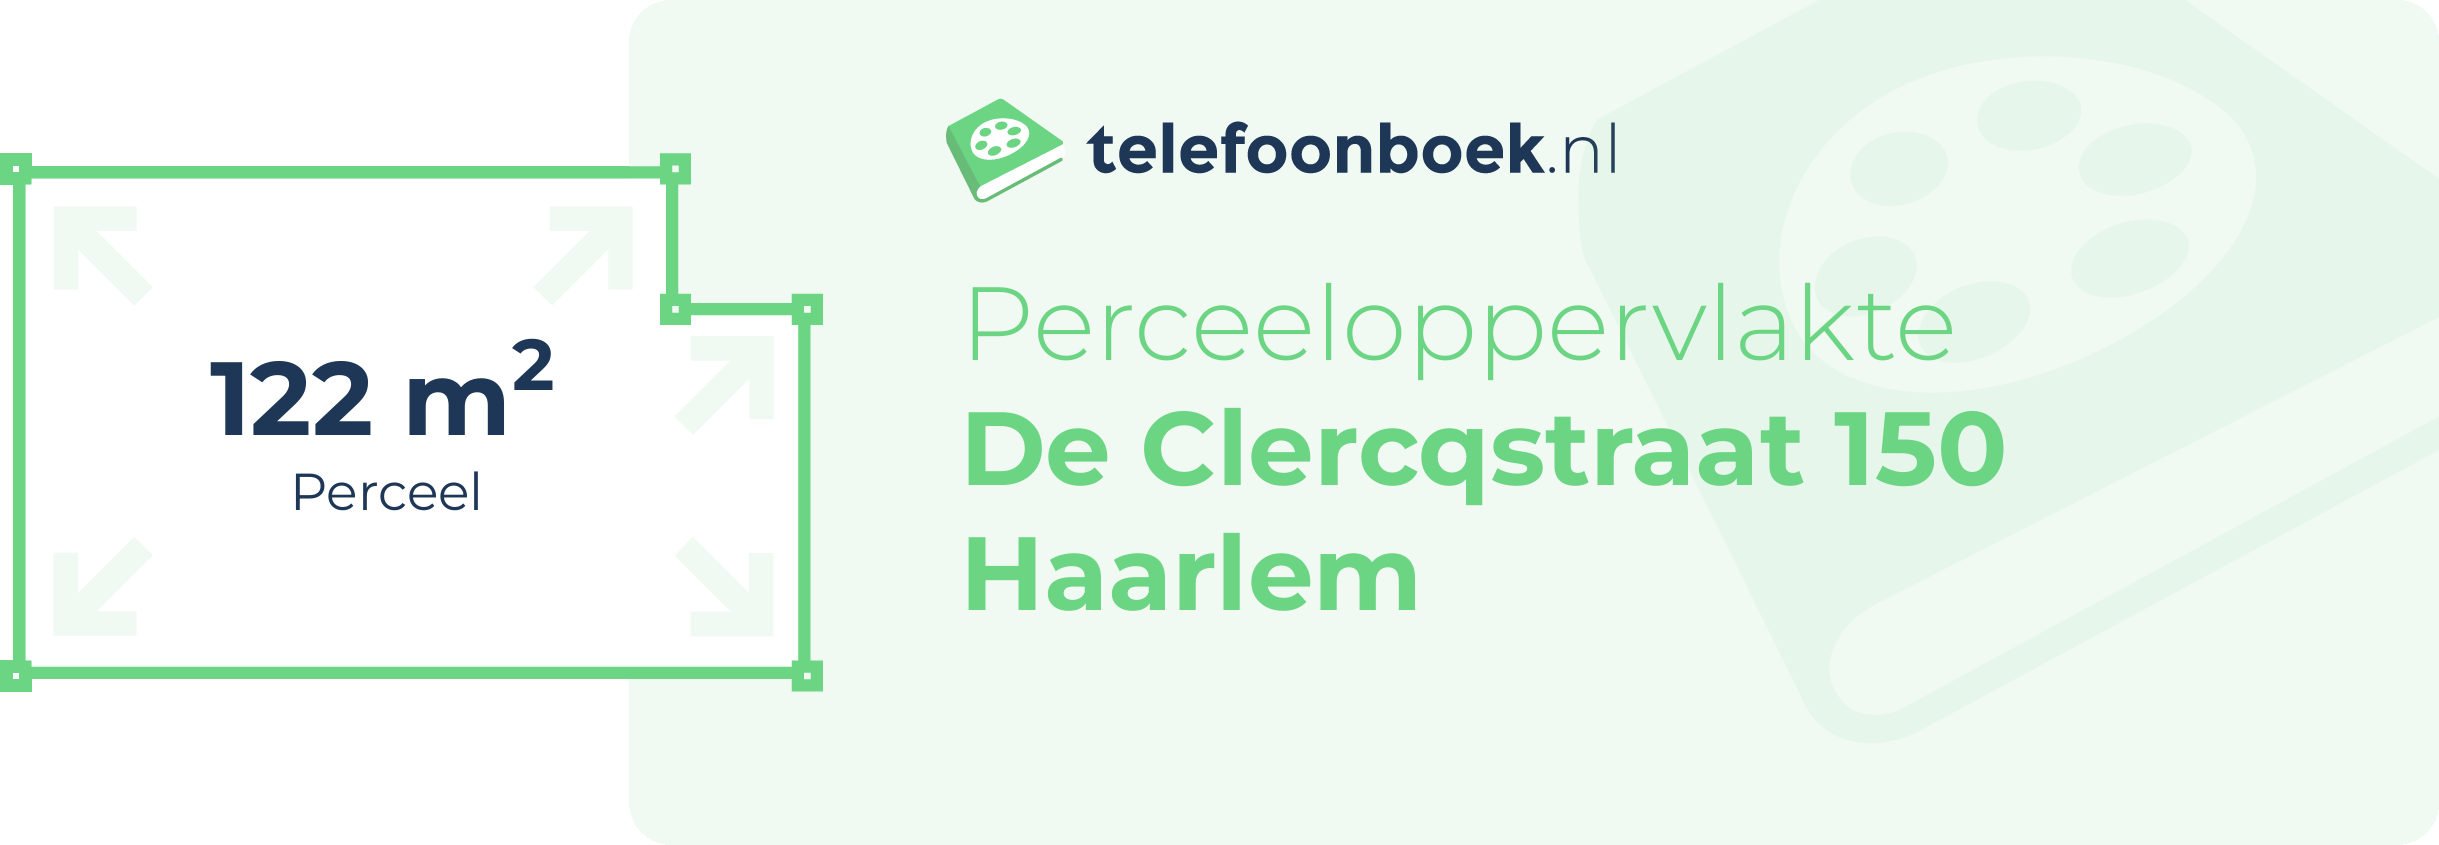 Perceeloppervlakte De Clercqstraat 150 Haarlem